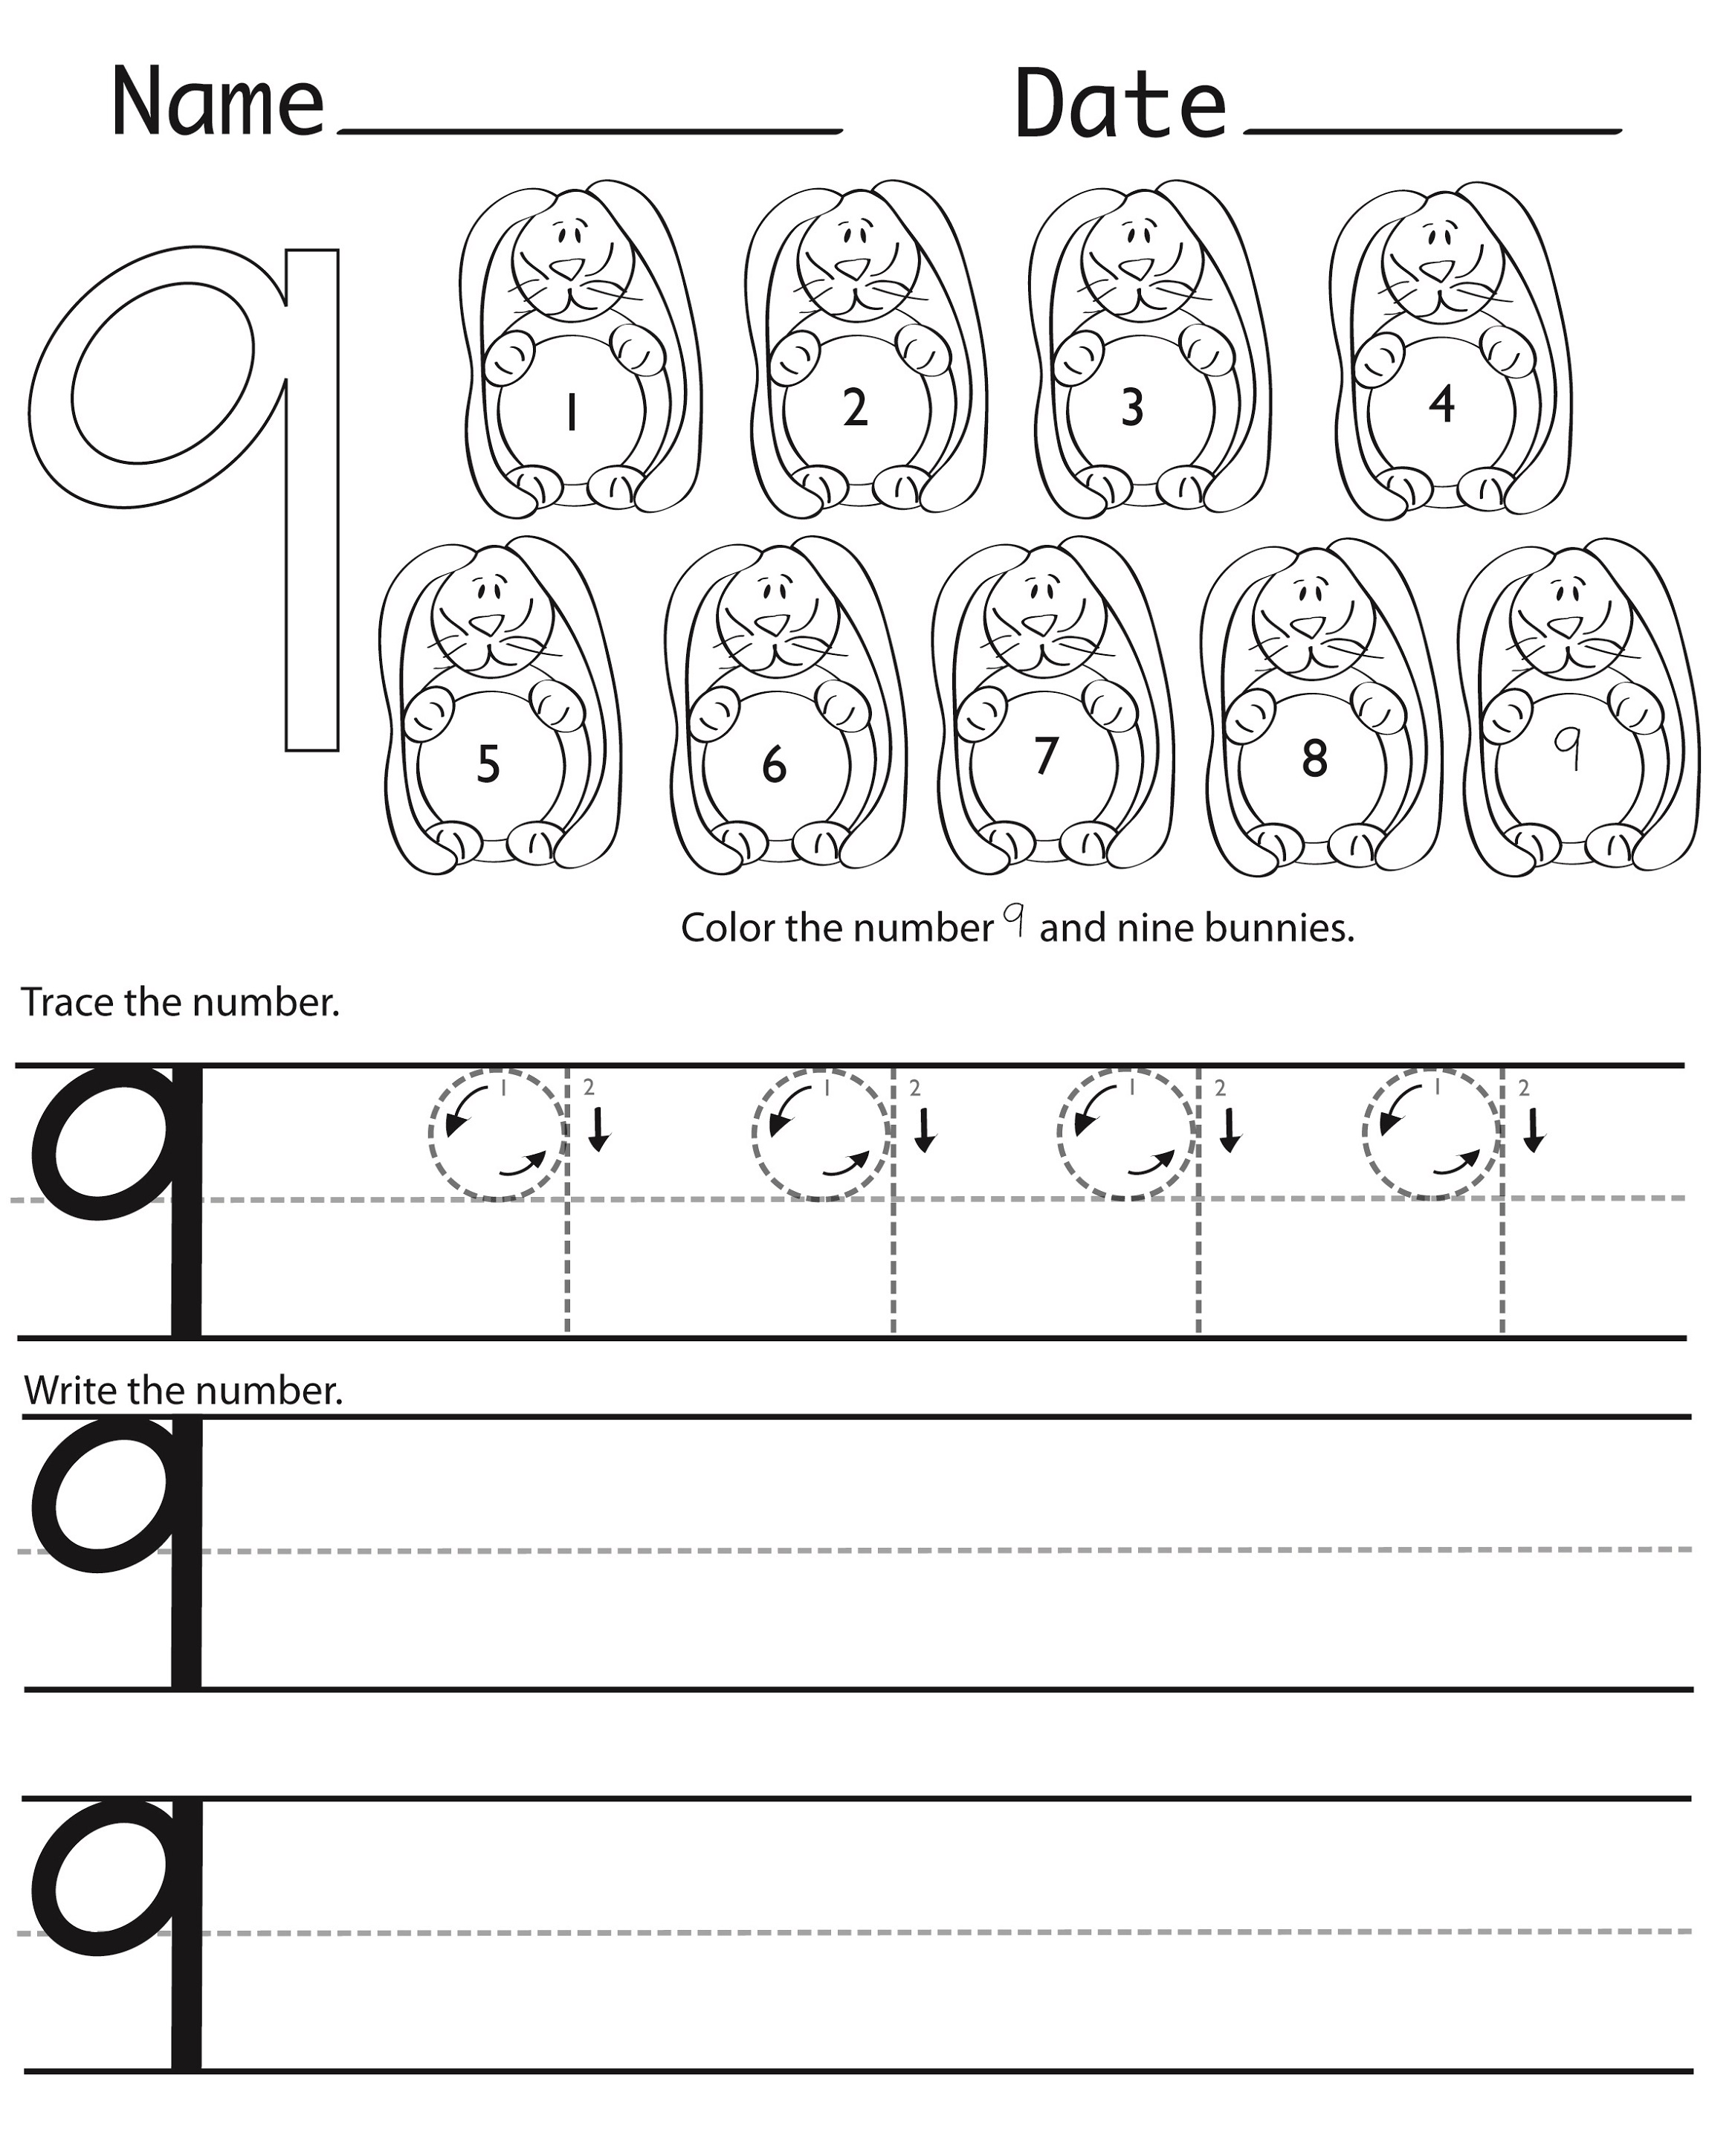 15 Best Images Of Worksheets For 1 13 Preschool Worksheets Number 14 Images And Photos Finder